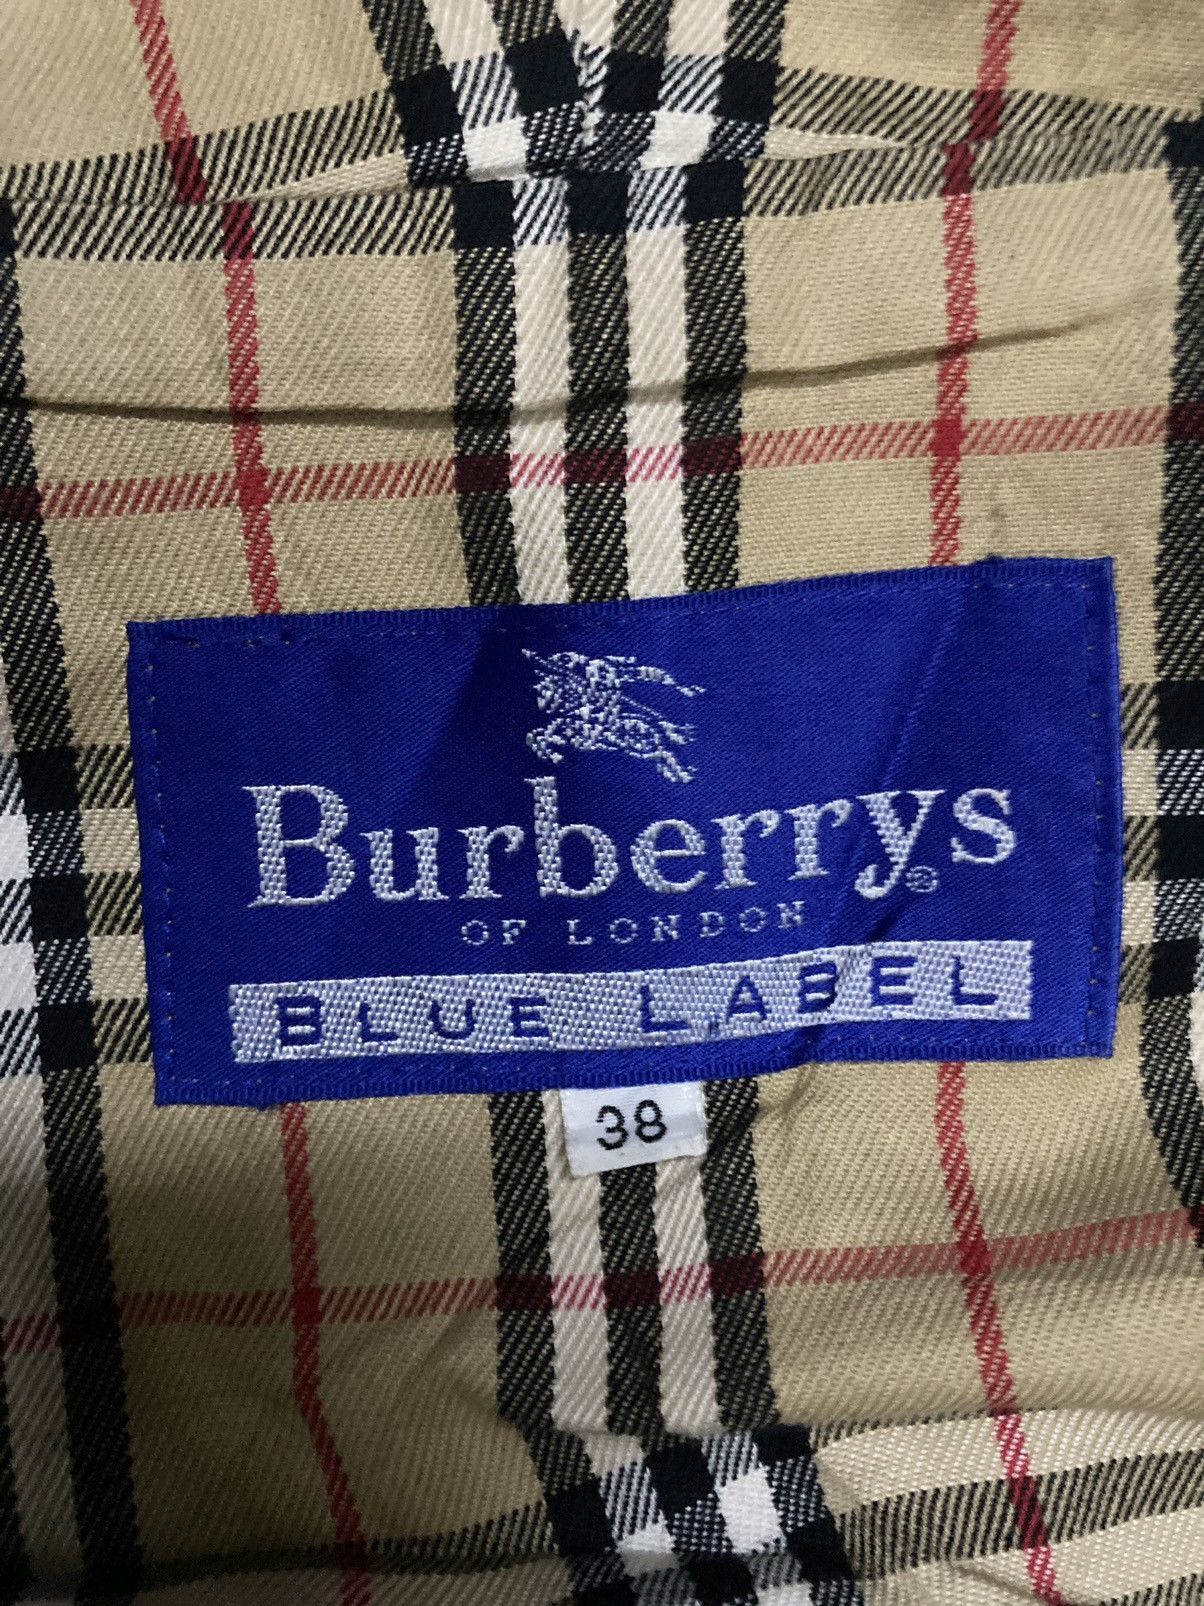 Burberrys Blue Label Hooded Jacket in Size 38 - 19